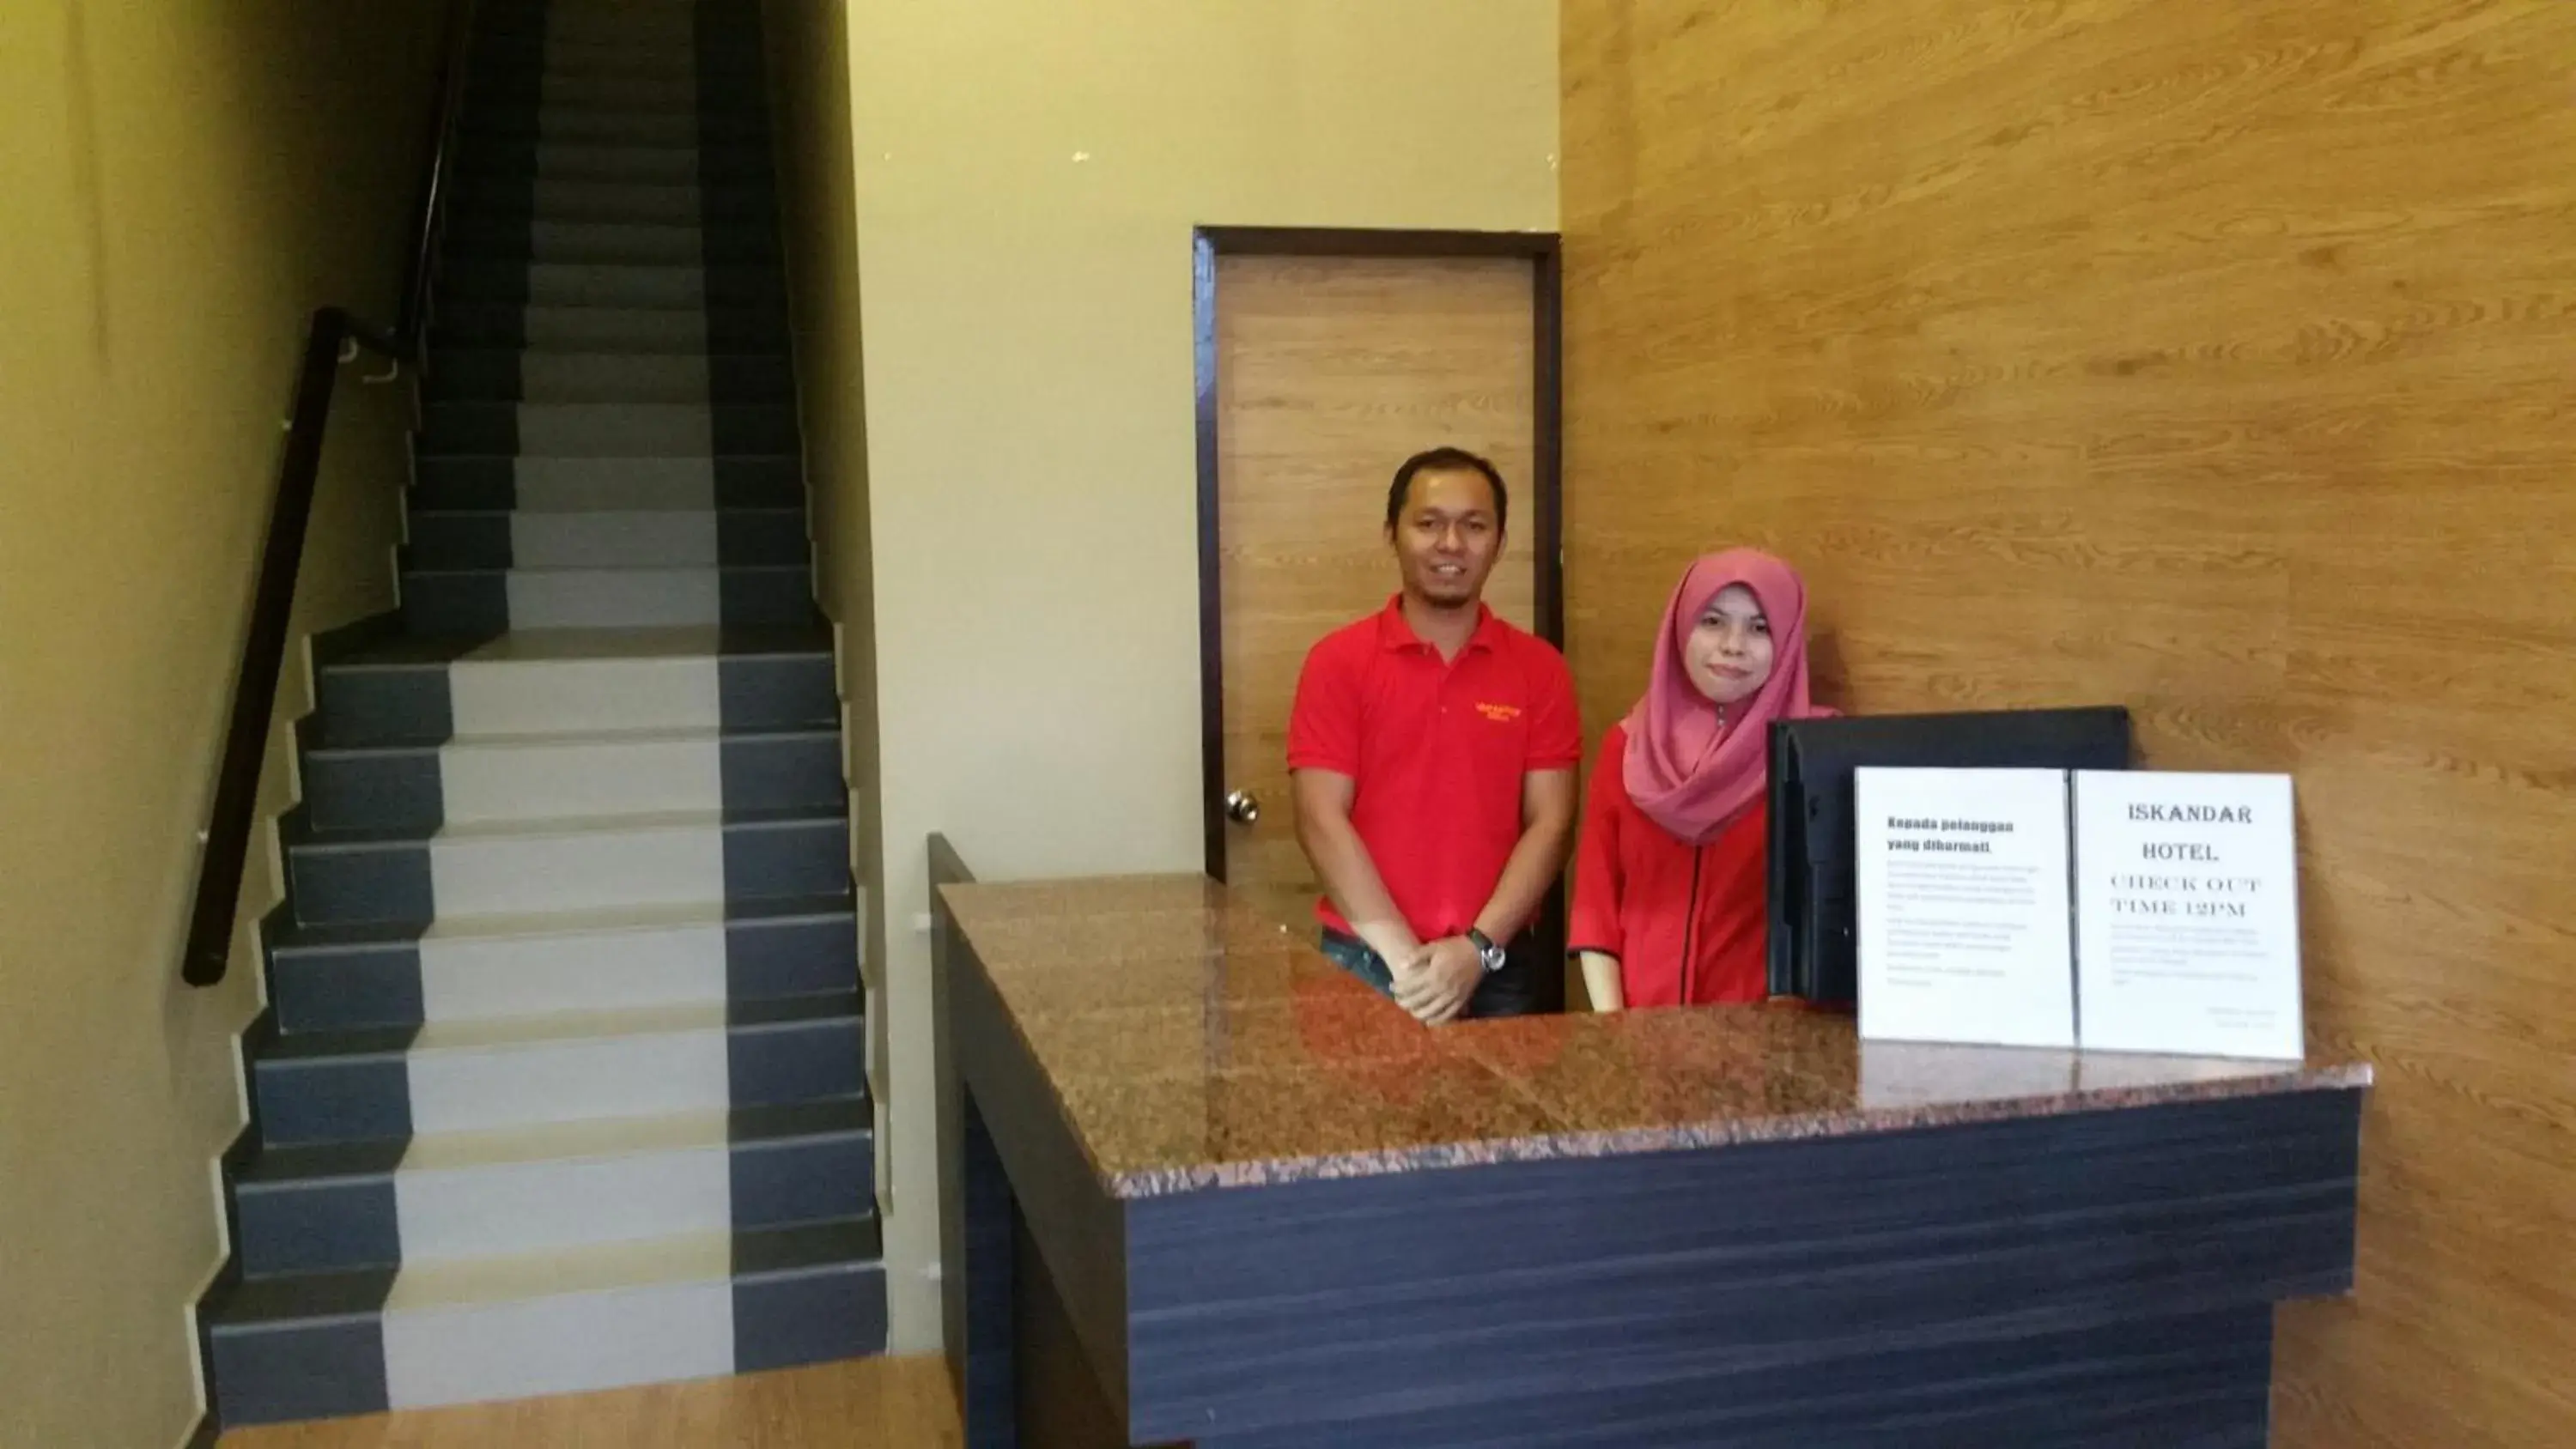 Lobby/Reception in Iskandar Hotel